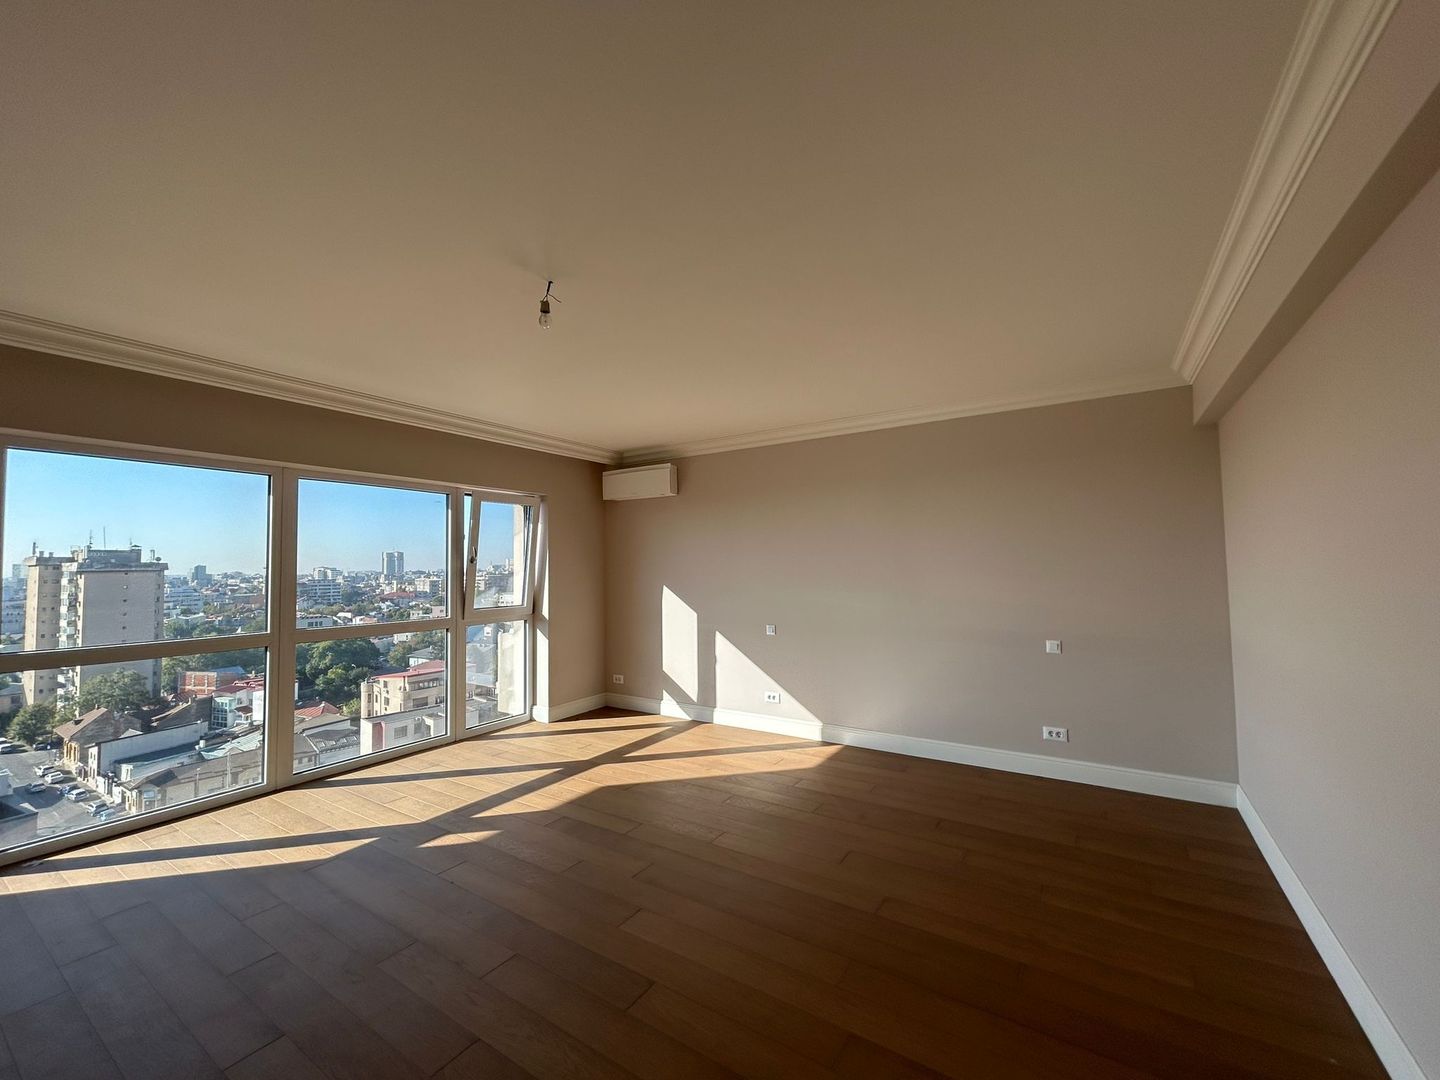 Duplex Penthouse | Central | View unic